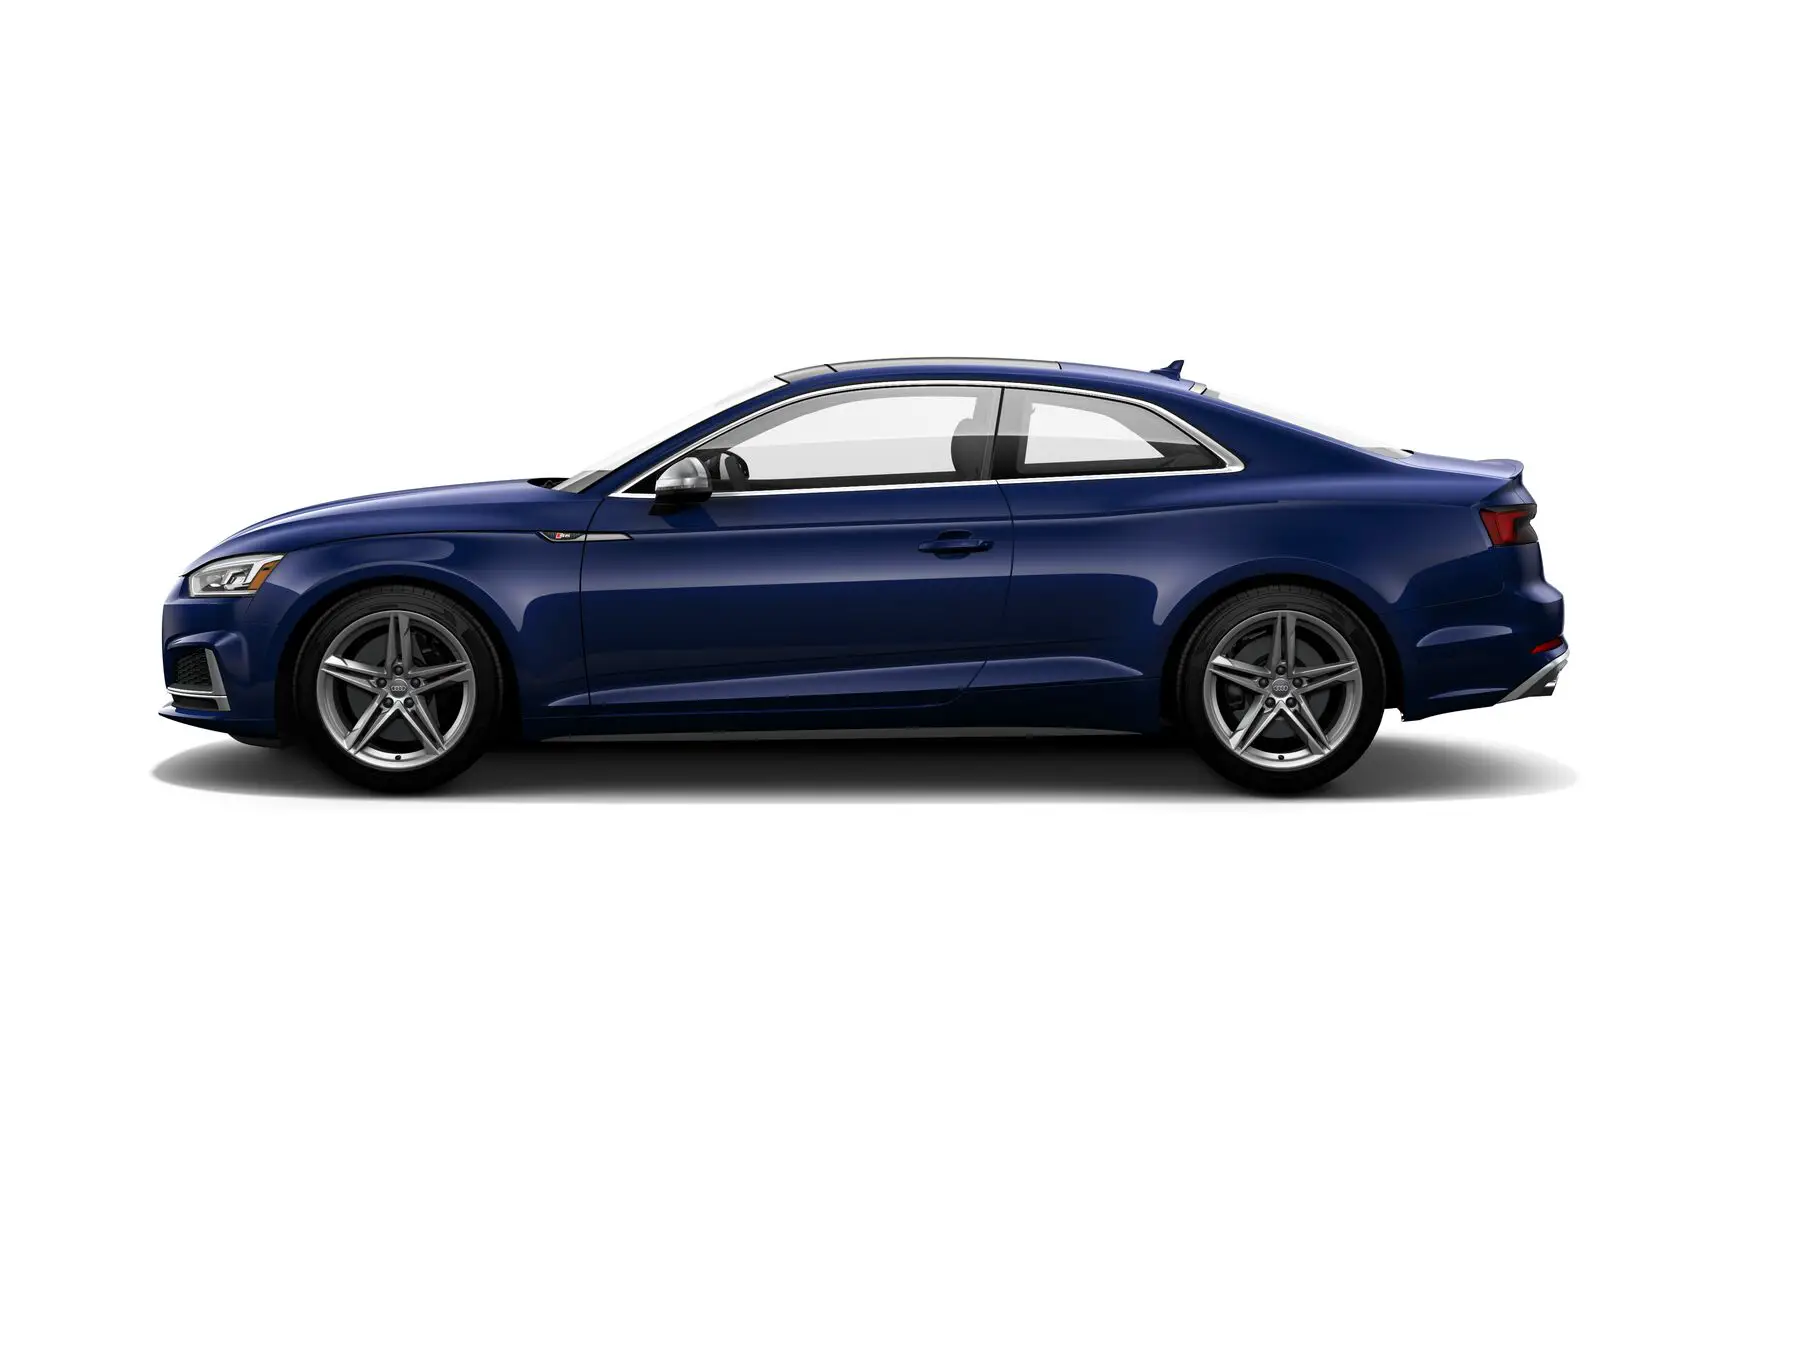 Audi S5 Premium Plus side view